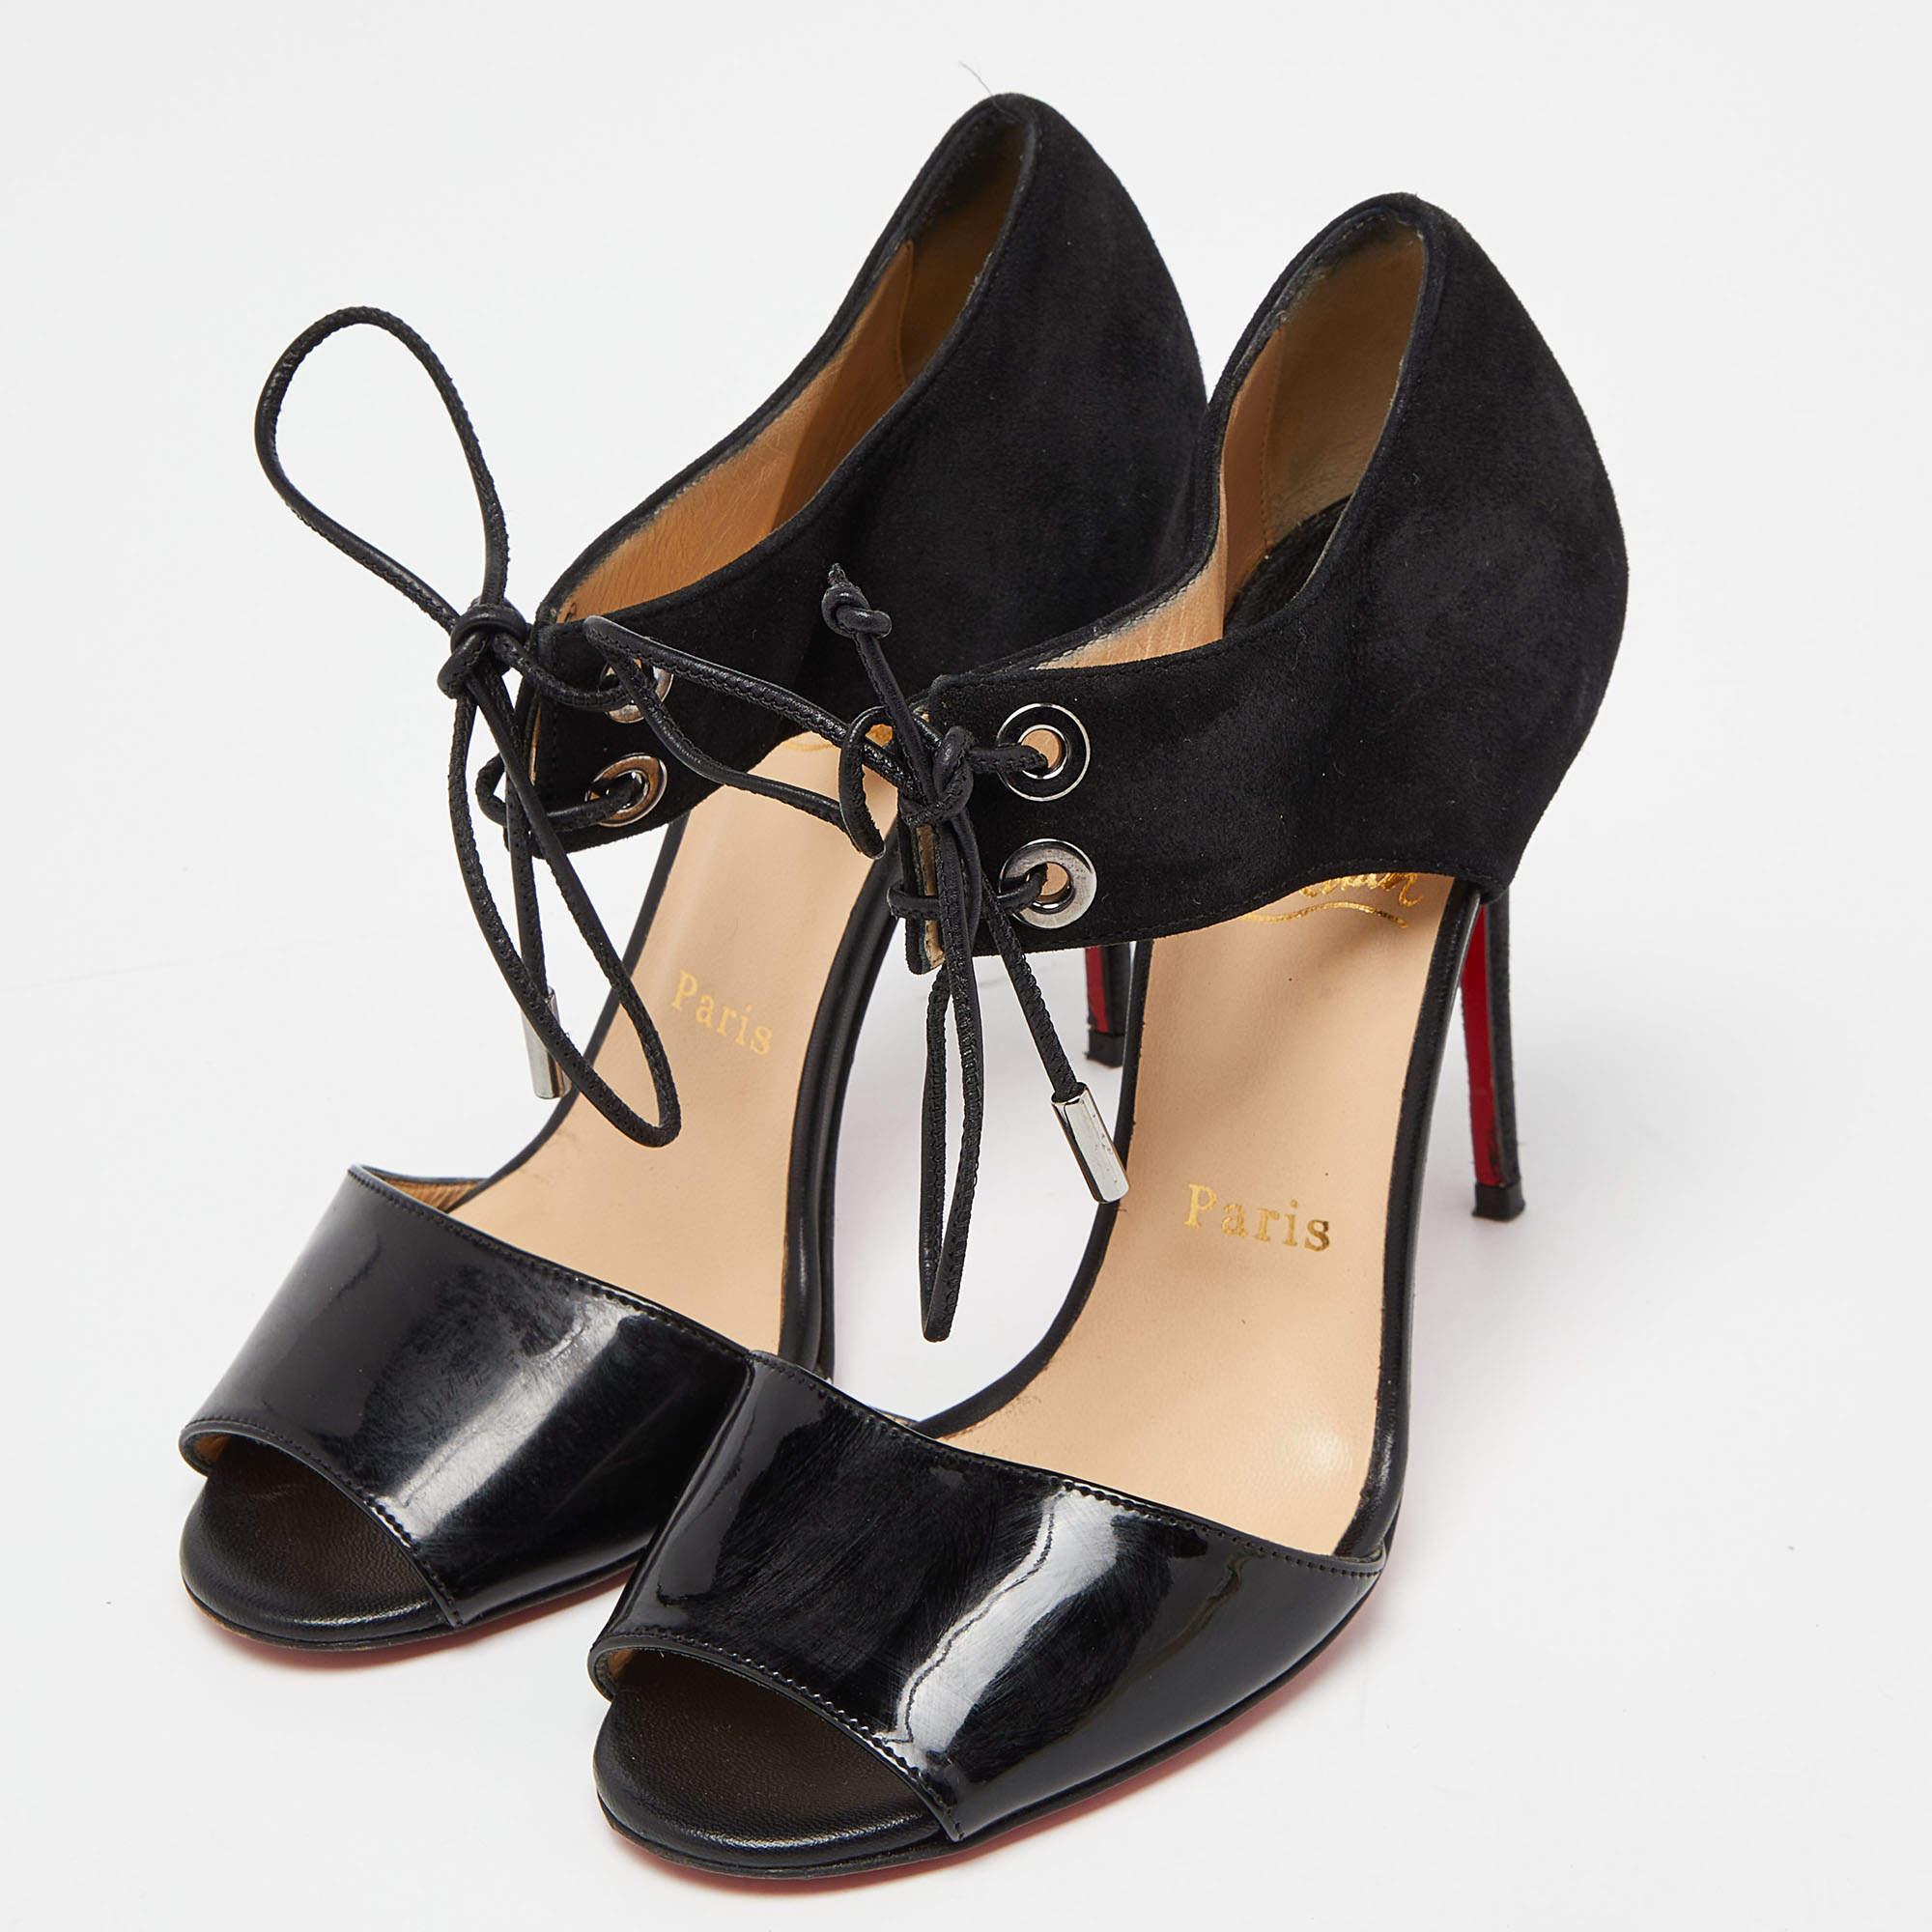 Cette paire de sandales de Christian Louboutin est d'une grande sophistication. Ces chaussures sont fabriquées en daim et en cuir verni, dans une teinte noire très chic, et sont dotées de lacets et de talons de 10 cm.

